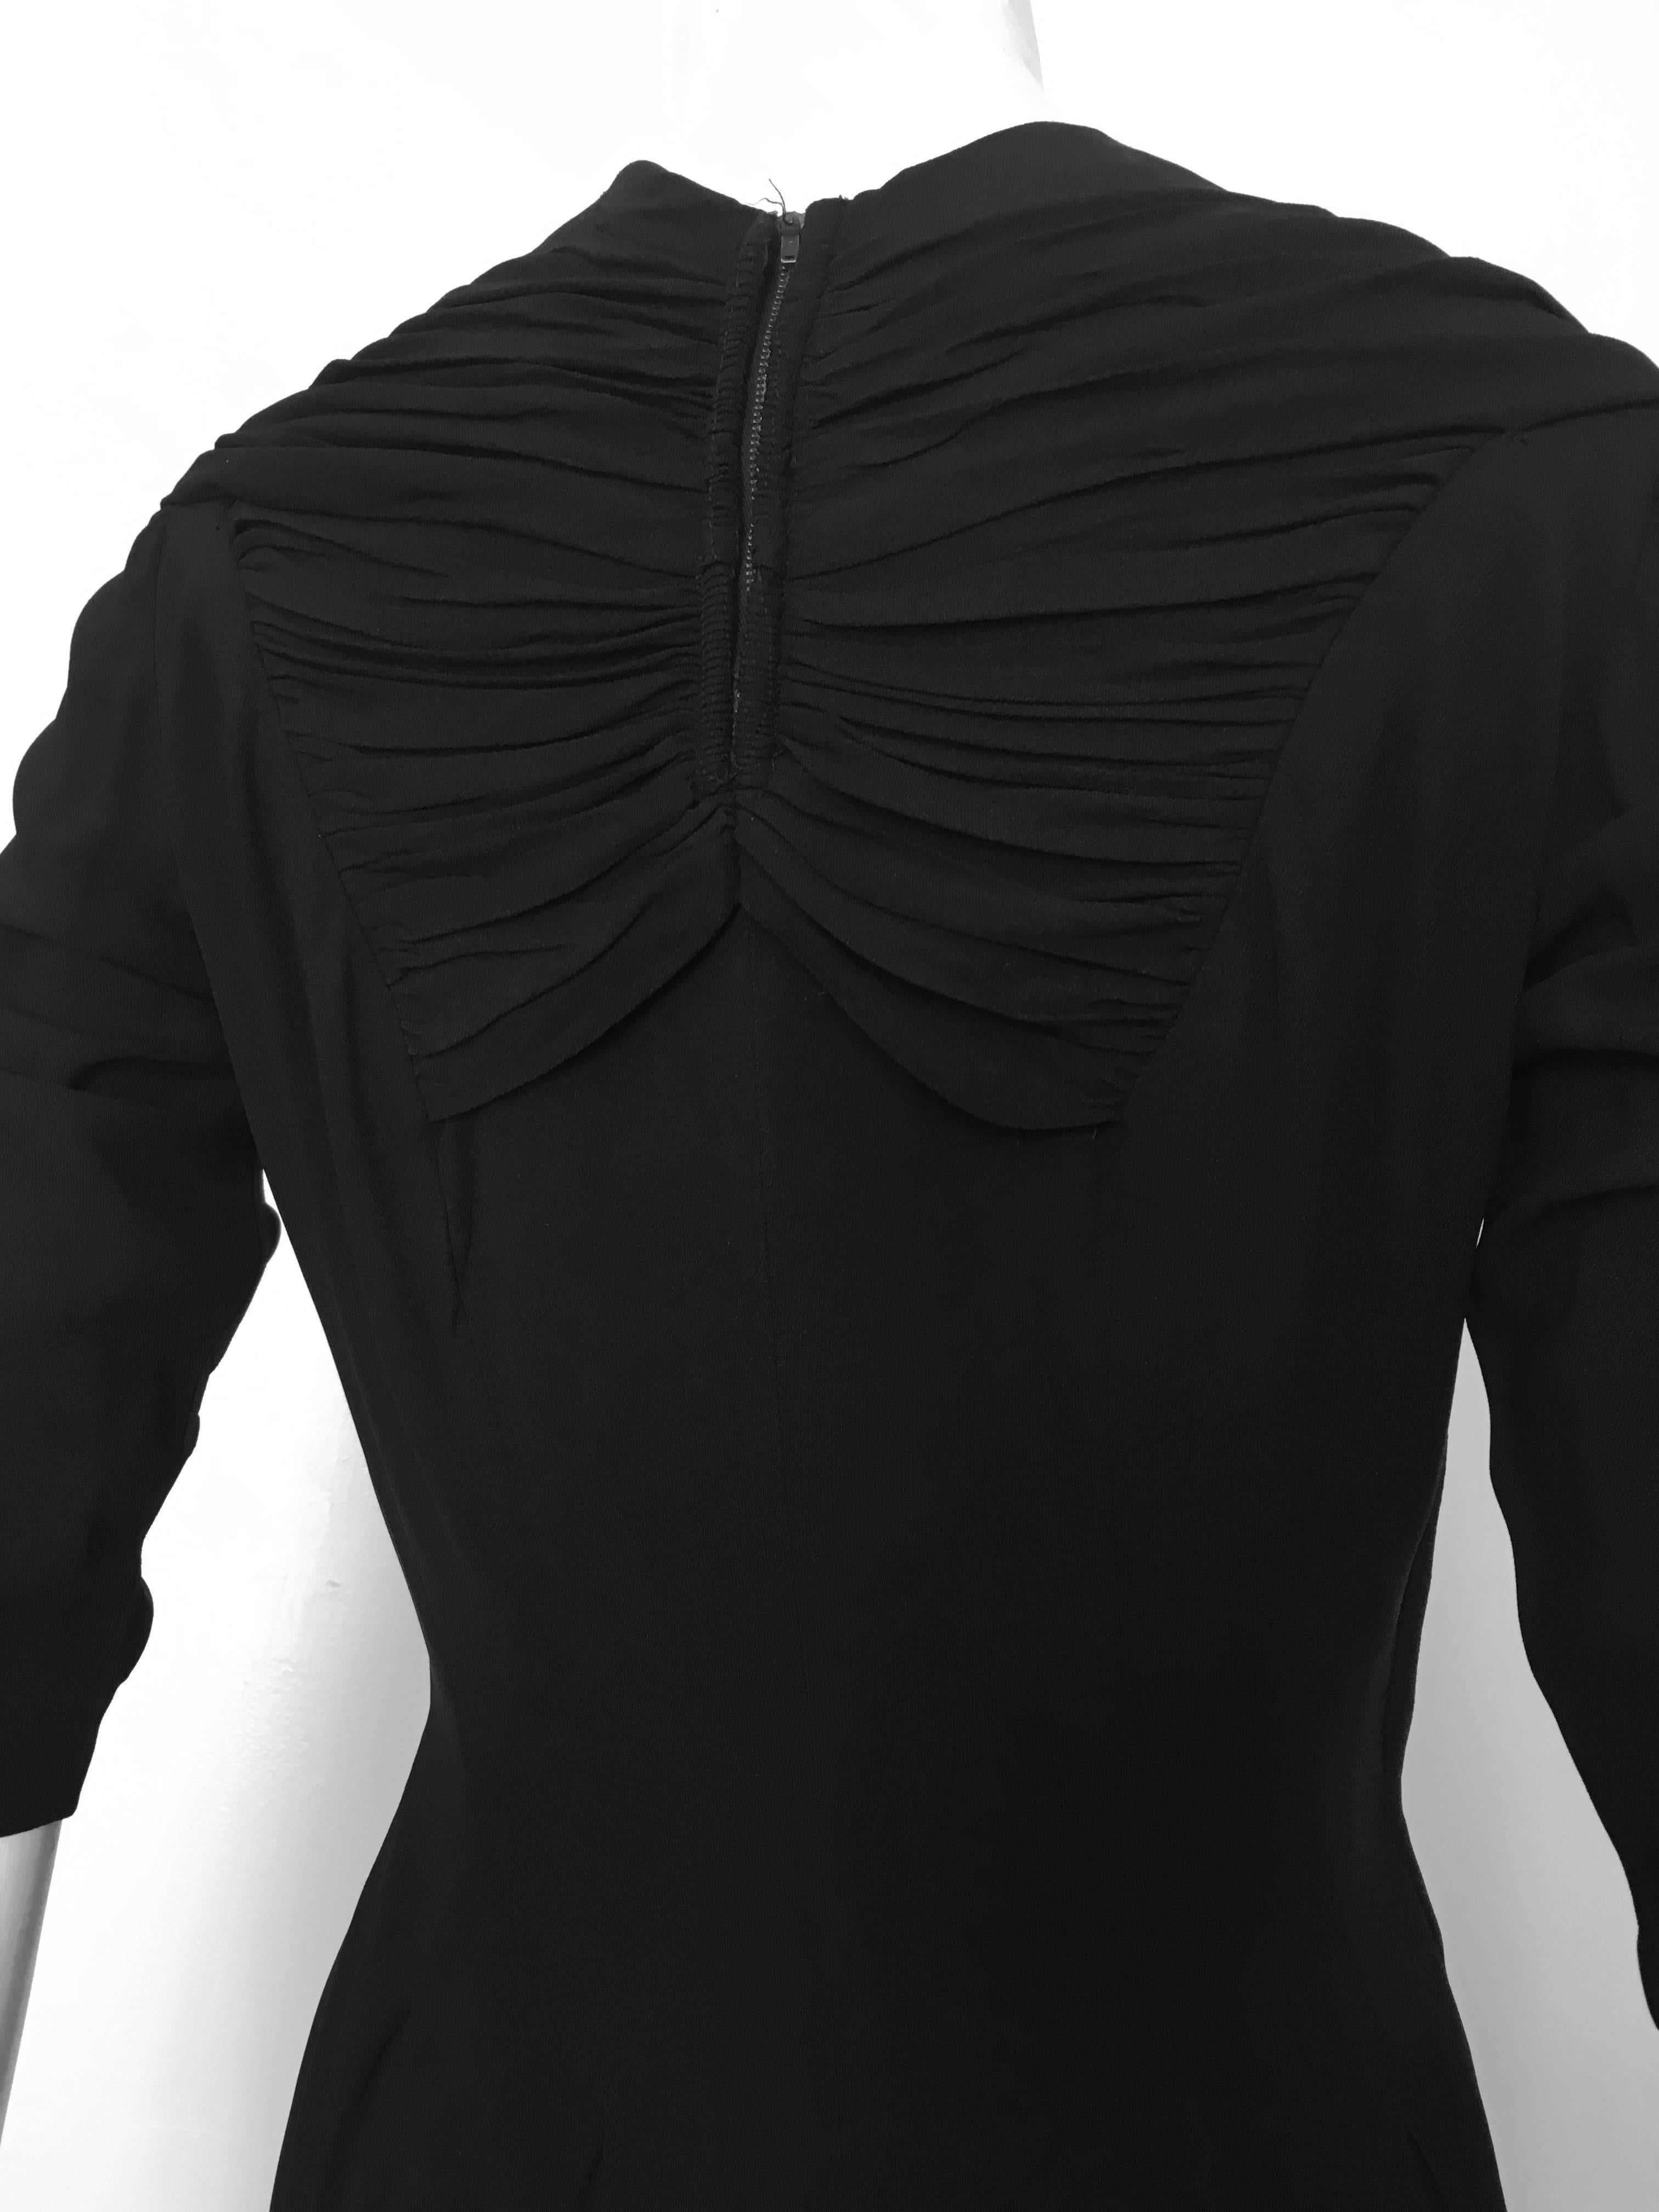 Women's or Men's Jo Copeland Black Wool Evening Dress Size 6.  For Sale